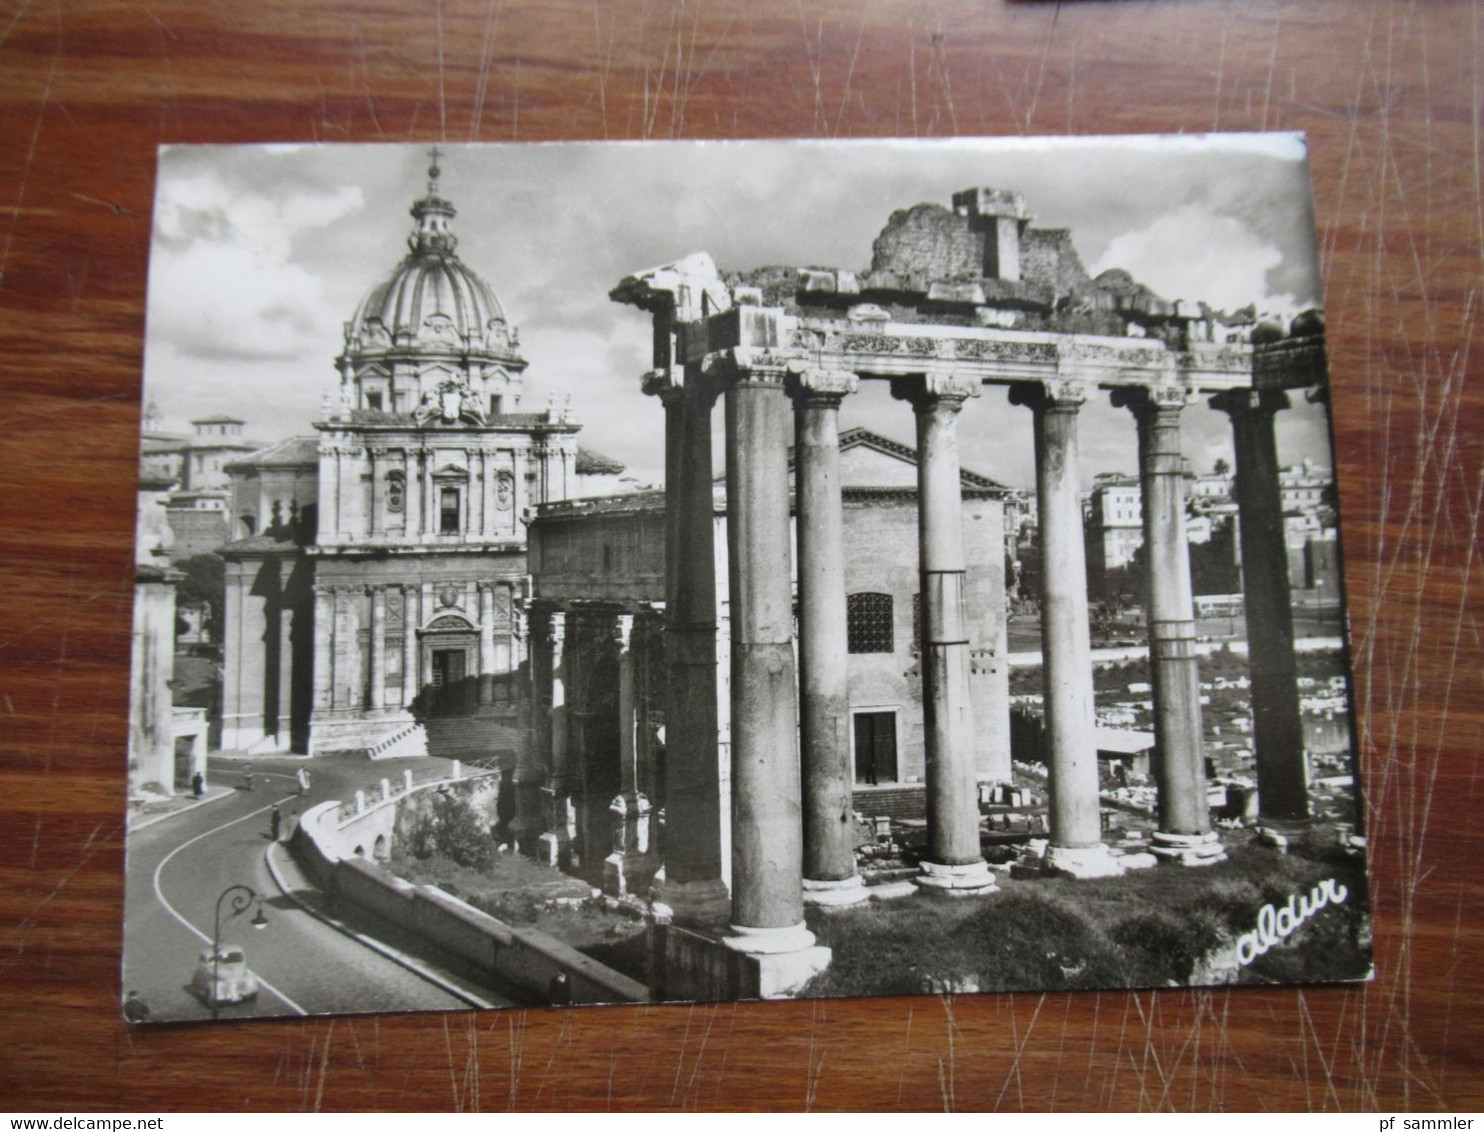 Vatican / Vatikanstadt 1950er / 60er Jahre kleiner belegeposten mit Ansichtskarten und FDC